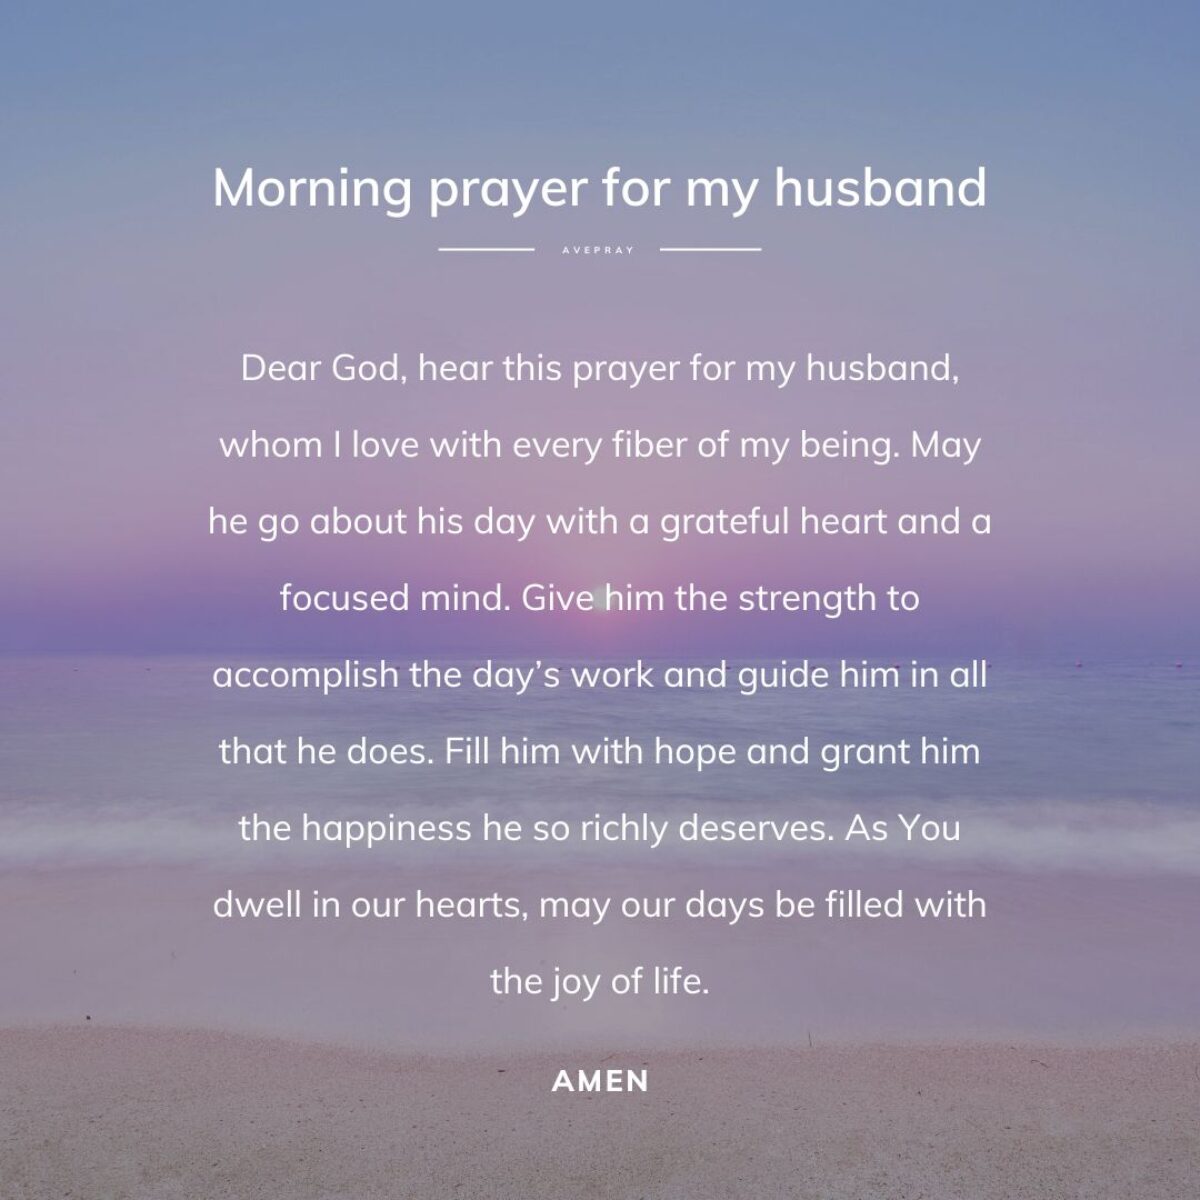 Morning prayer for my husband – AvePray